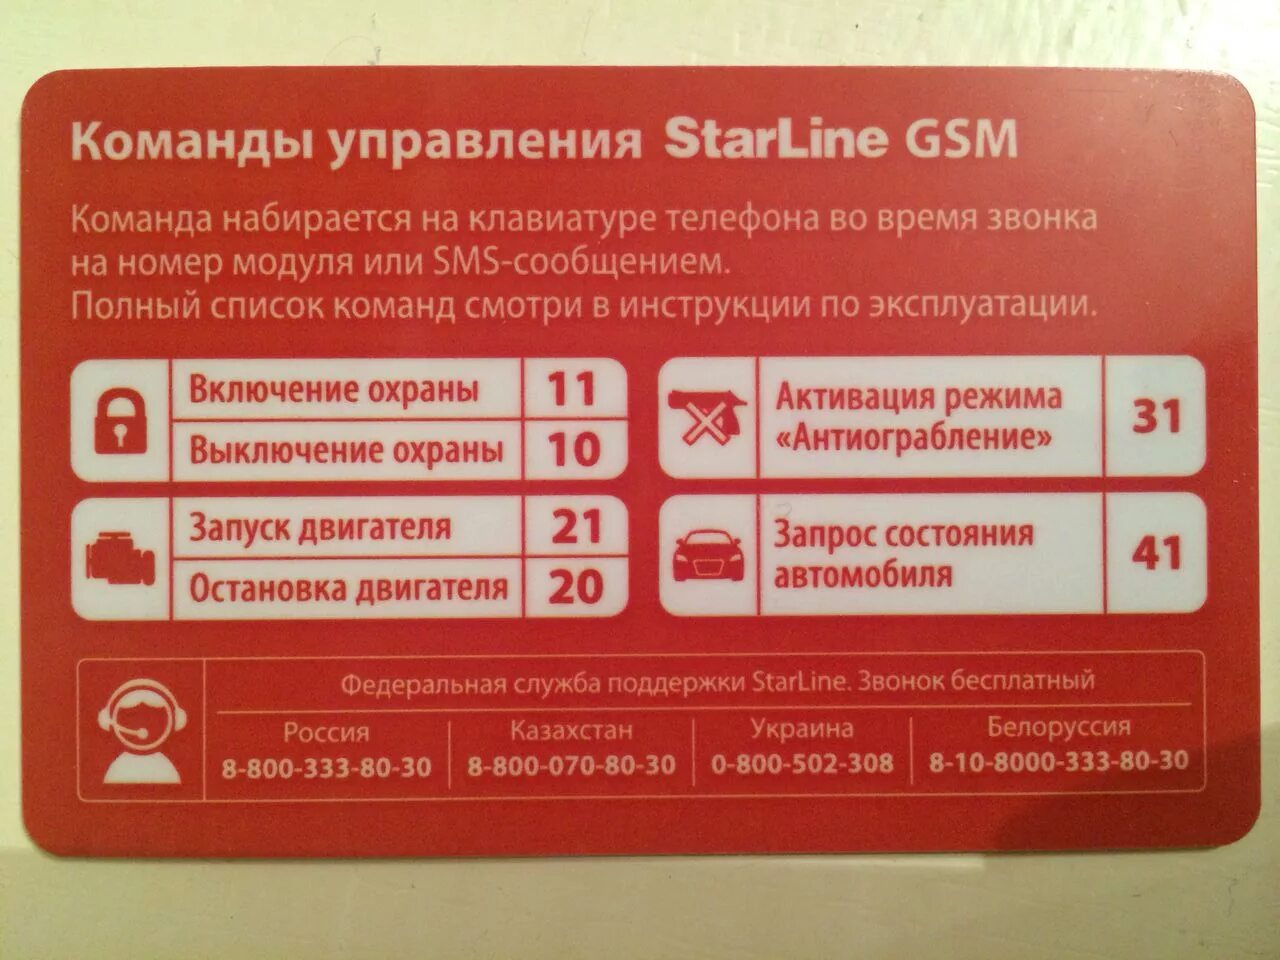 Сигнализация смс на телефон. Старлайн а93 GSM модуль. Коды команд старлайн GSM а93. SMS команды STARLINE a93. Komandi upravleniya STARLINE GSM а93.